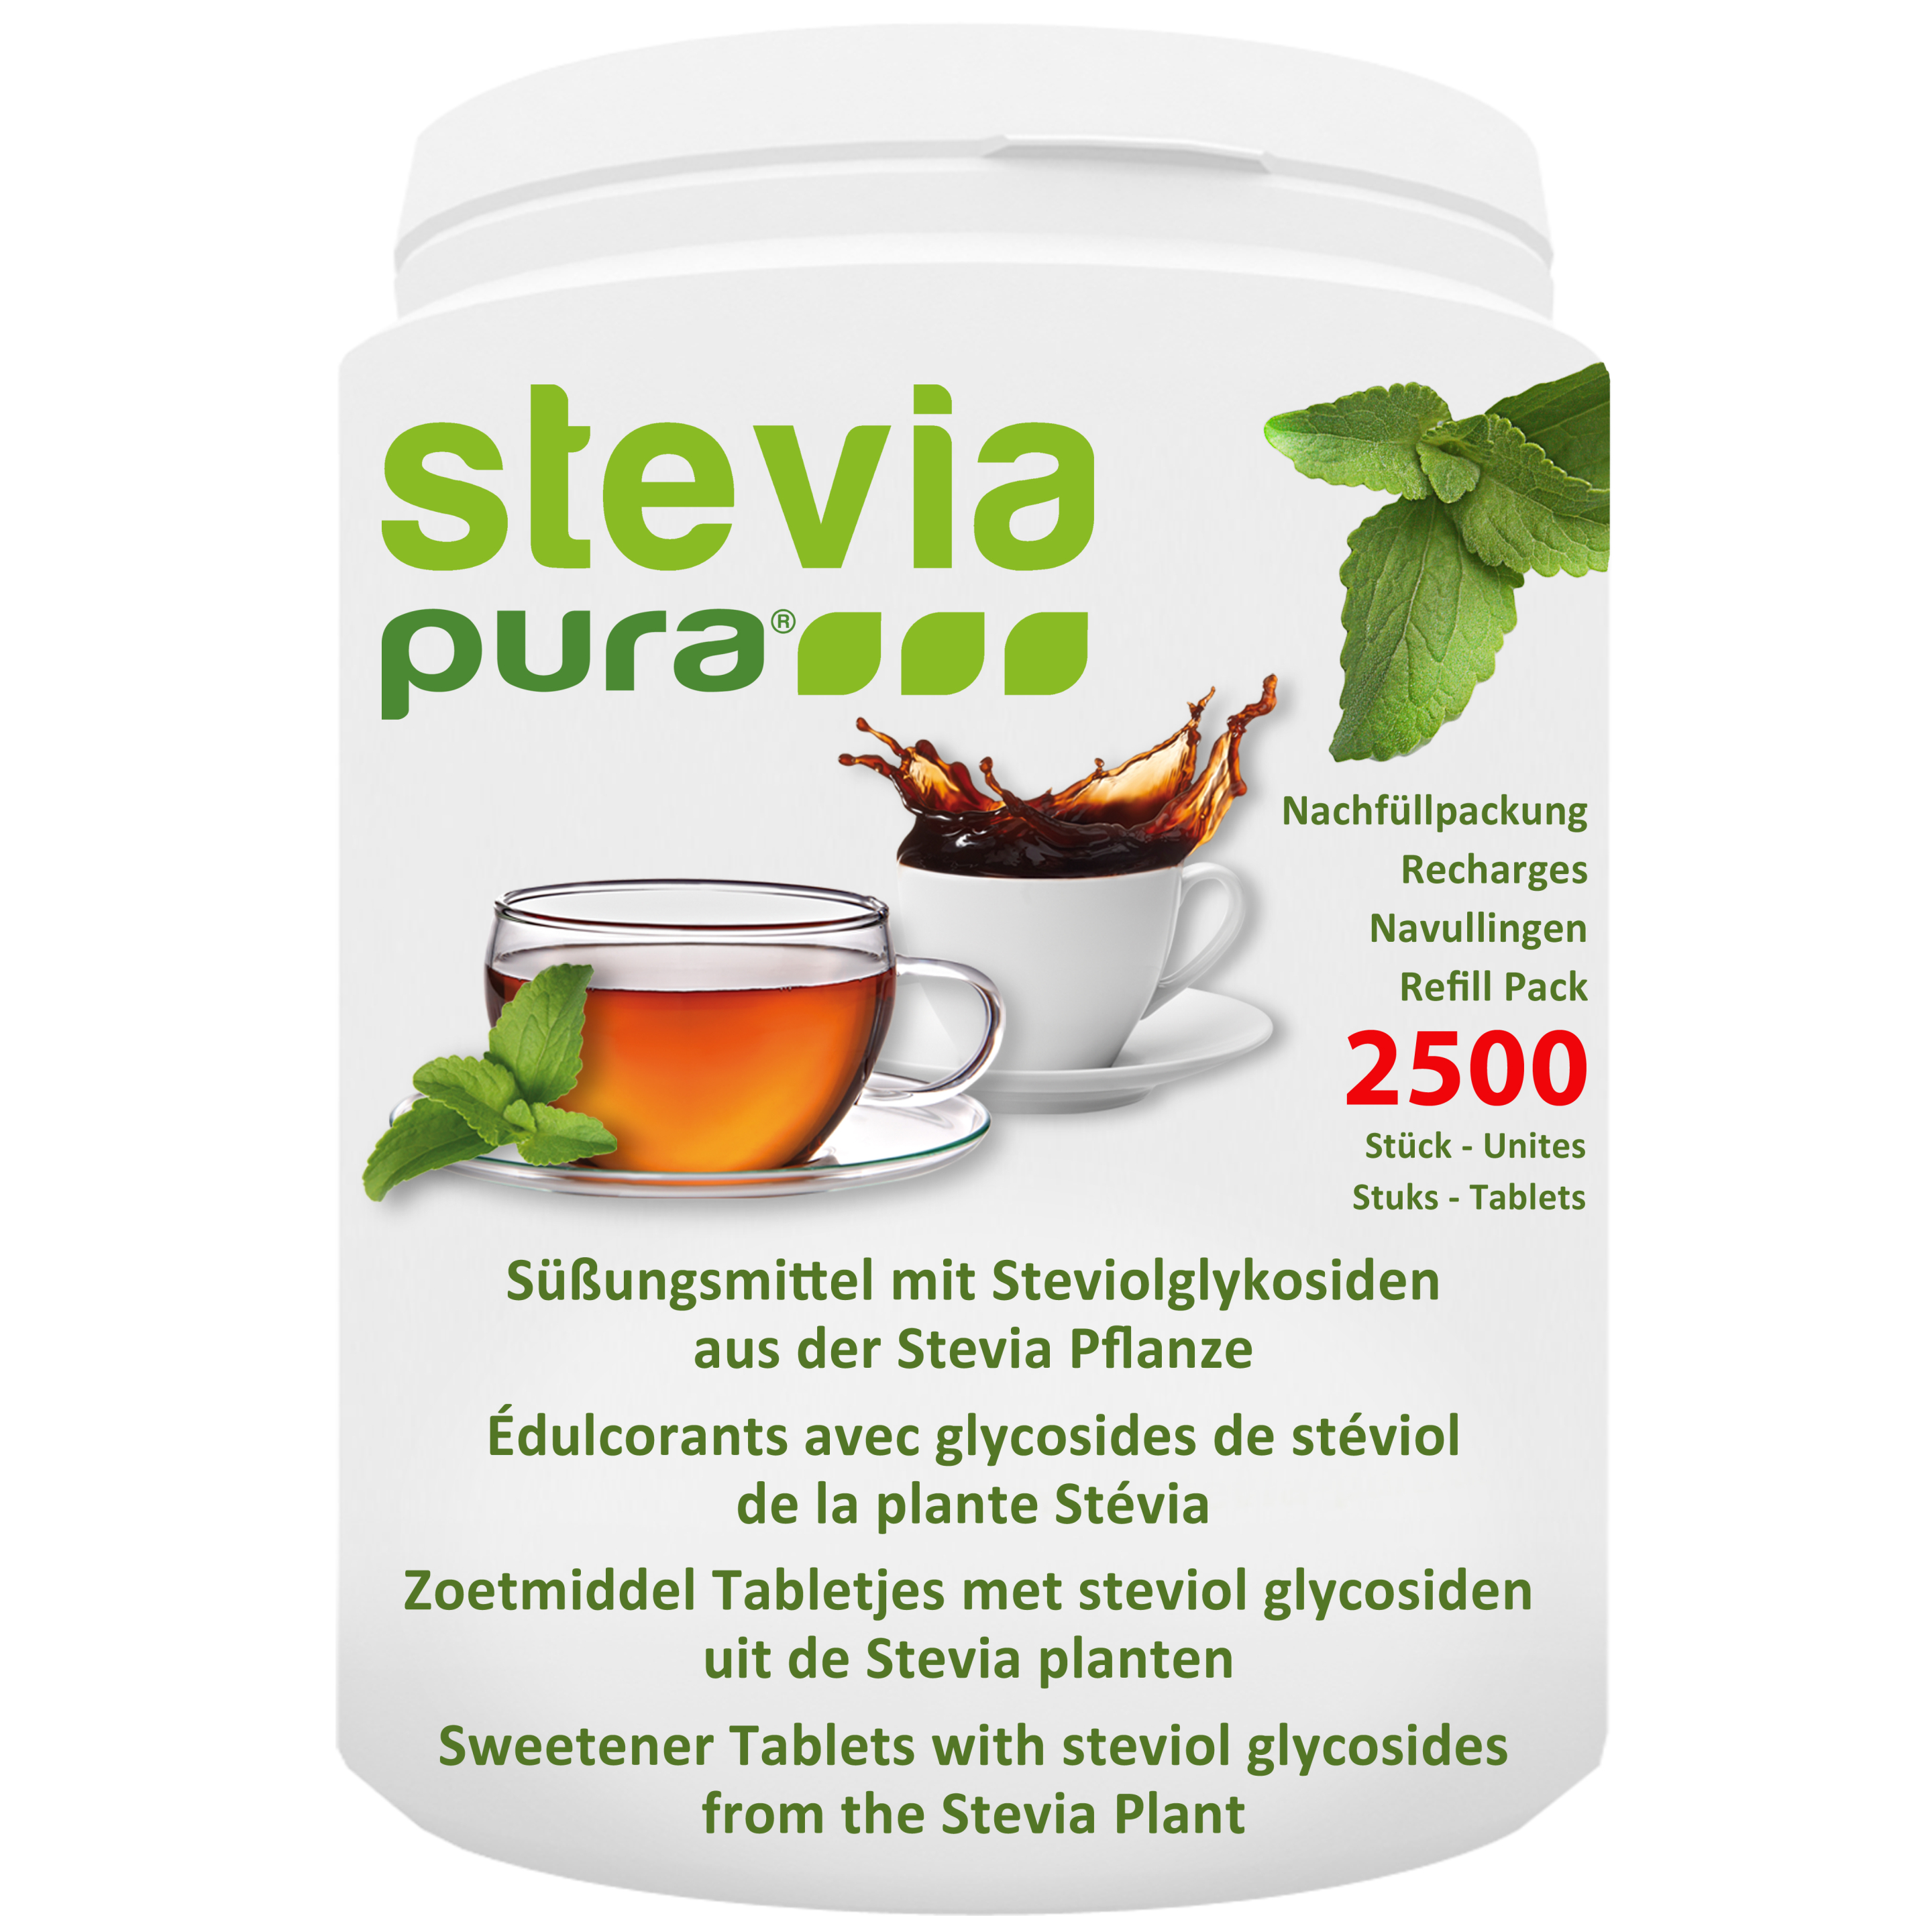 2500 Stevia Süßstofftabletten | Stevia Tabs | Stevia Tabletten Nachfüllpackung